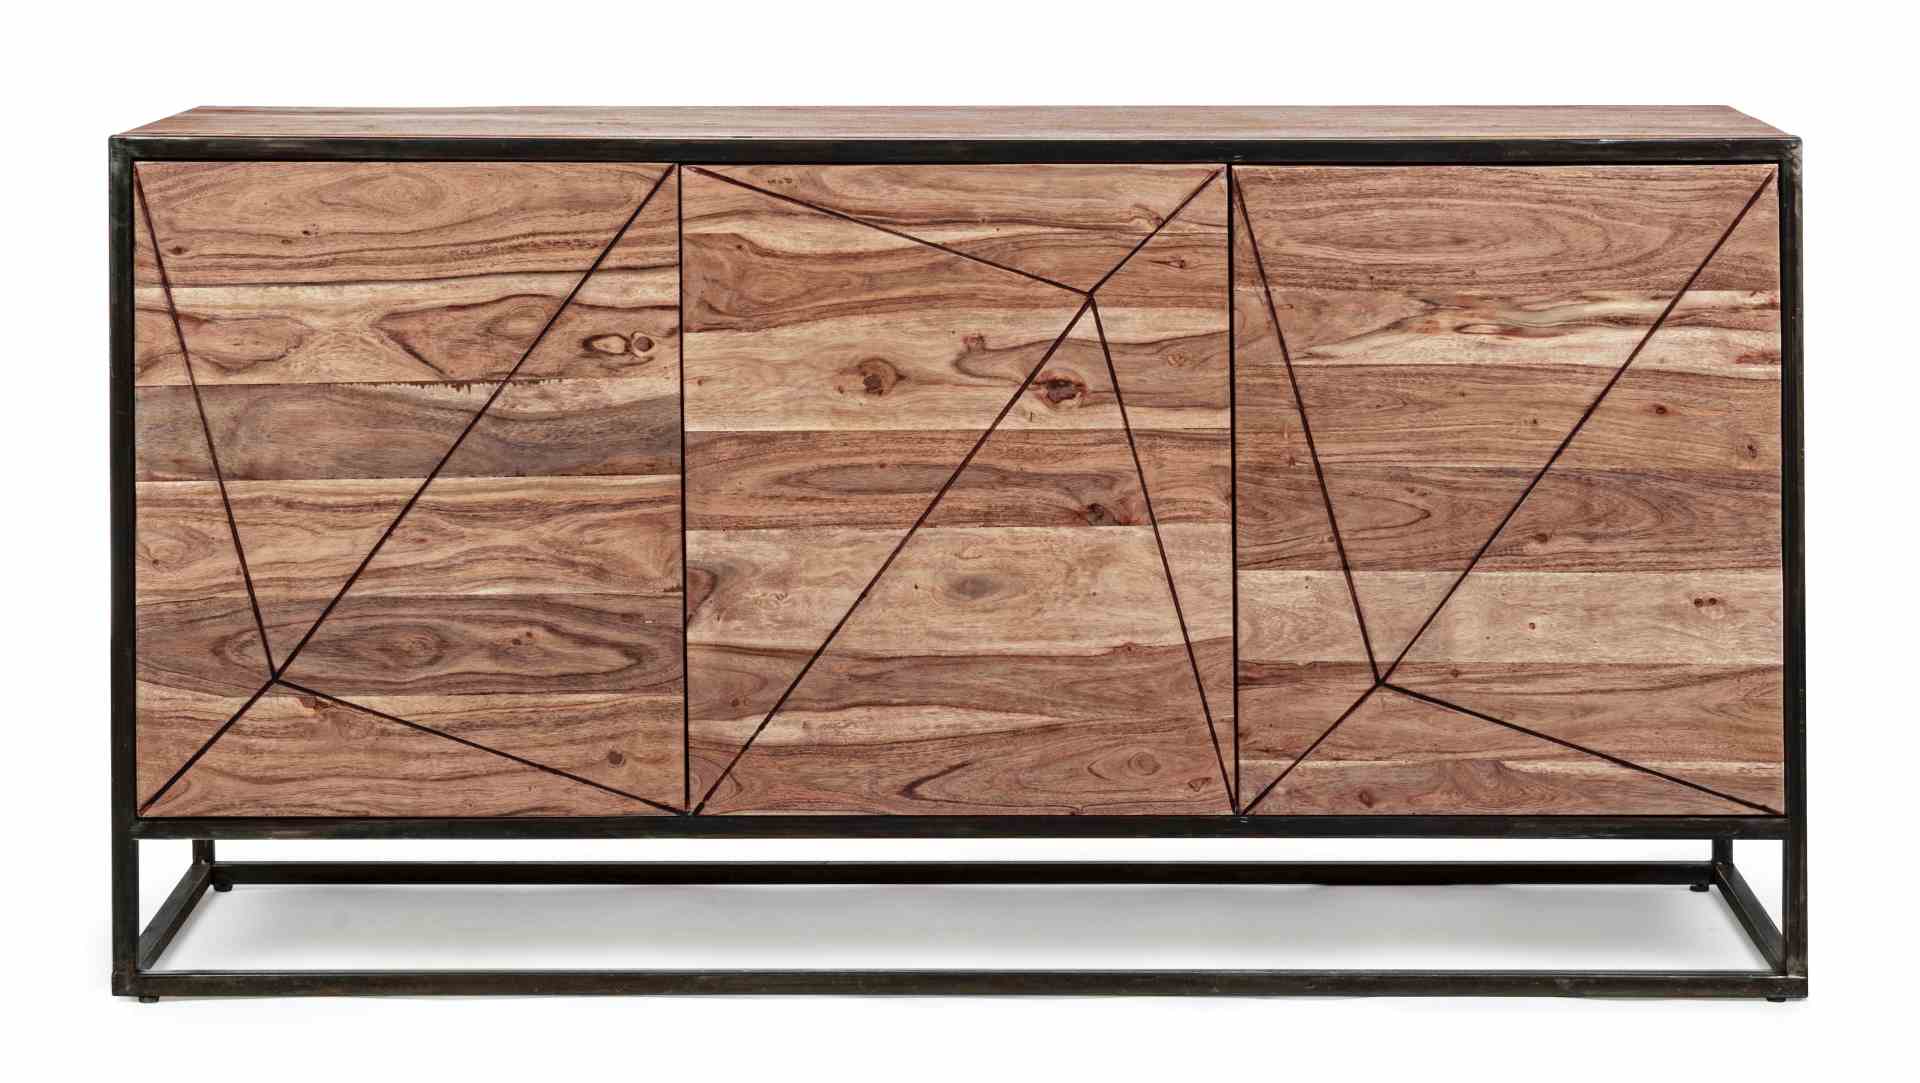 Das Sideboard Egon überzeugt mit seinem modernen Design. Gefertigt wurde es aus Akazien-Holz, welches einen natürlichen Farbton besitzt. Das Gestell ist aus Metall und hat eine schwarze Farbe. Das Sideboard verfügt über drei Türen. Die Breite beträgt 145 